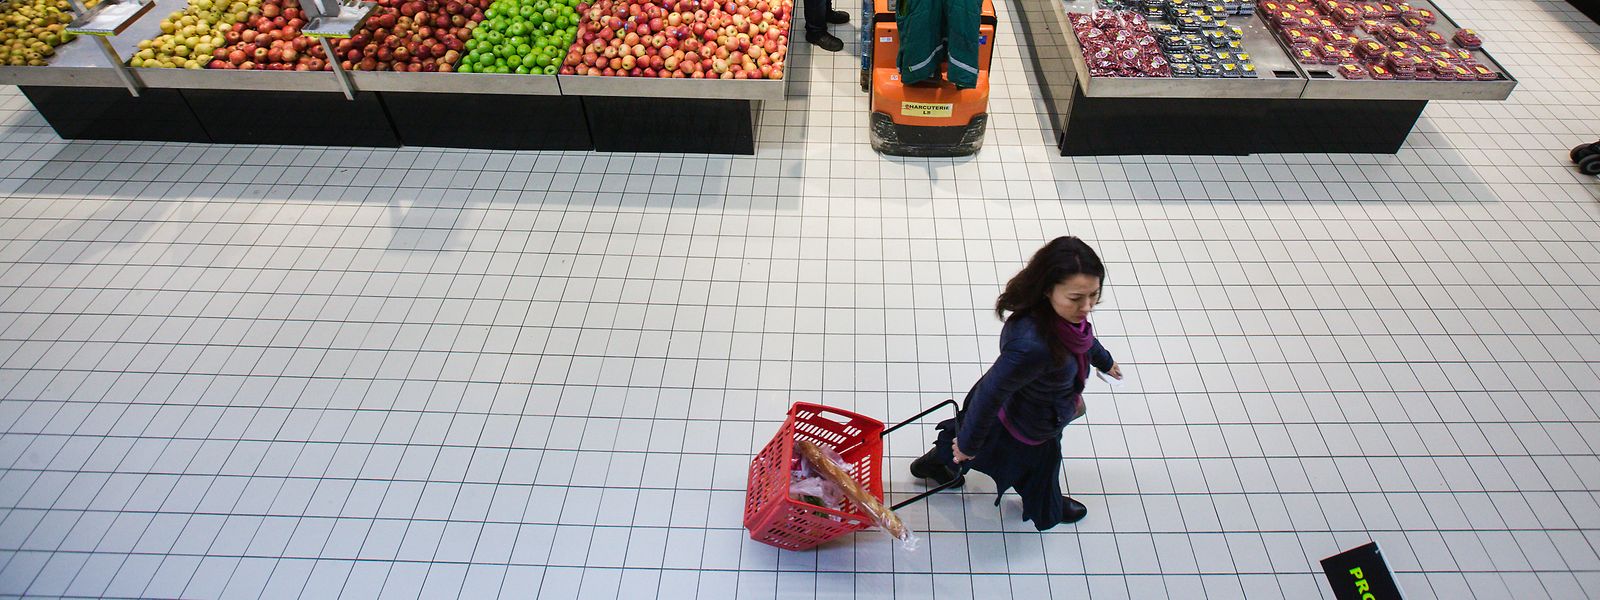 O aumento dos preços nos produtos também já se faz sentir nos supermercados do Luxemburgo.